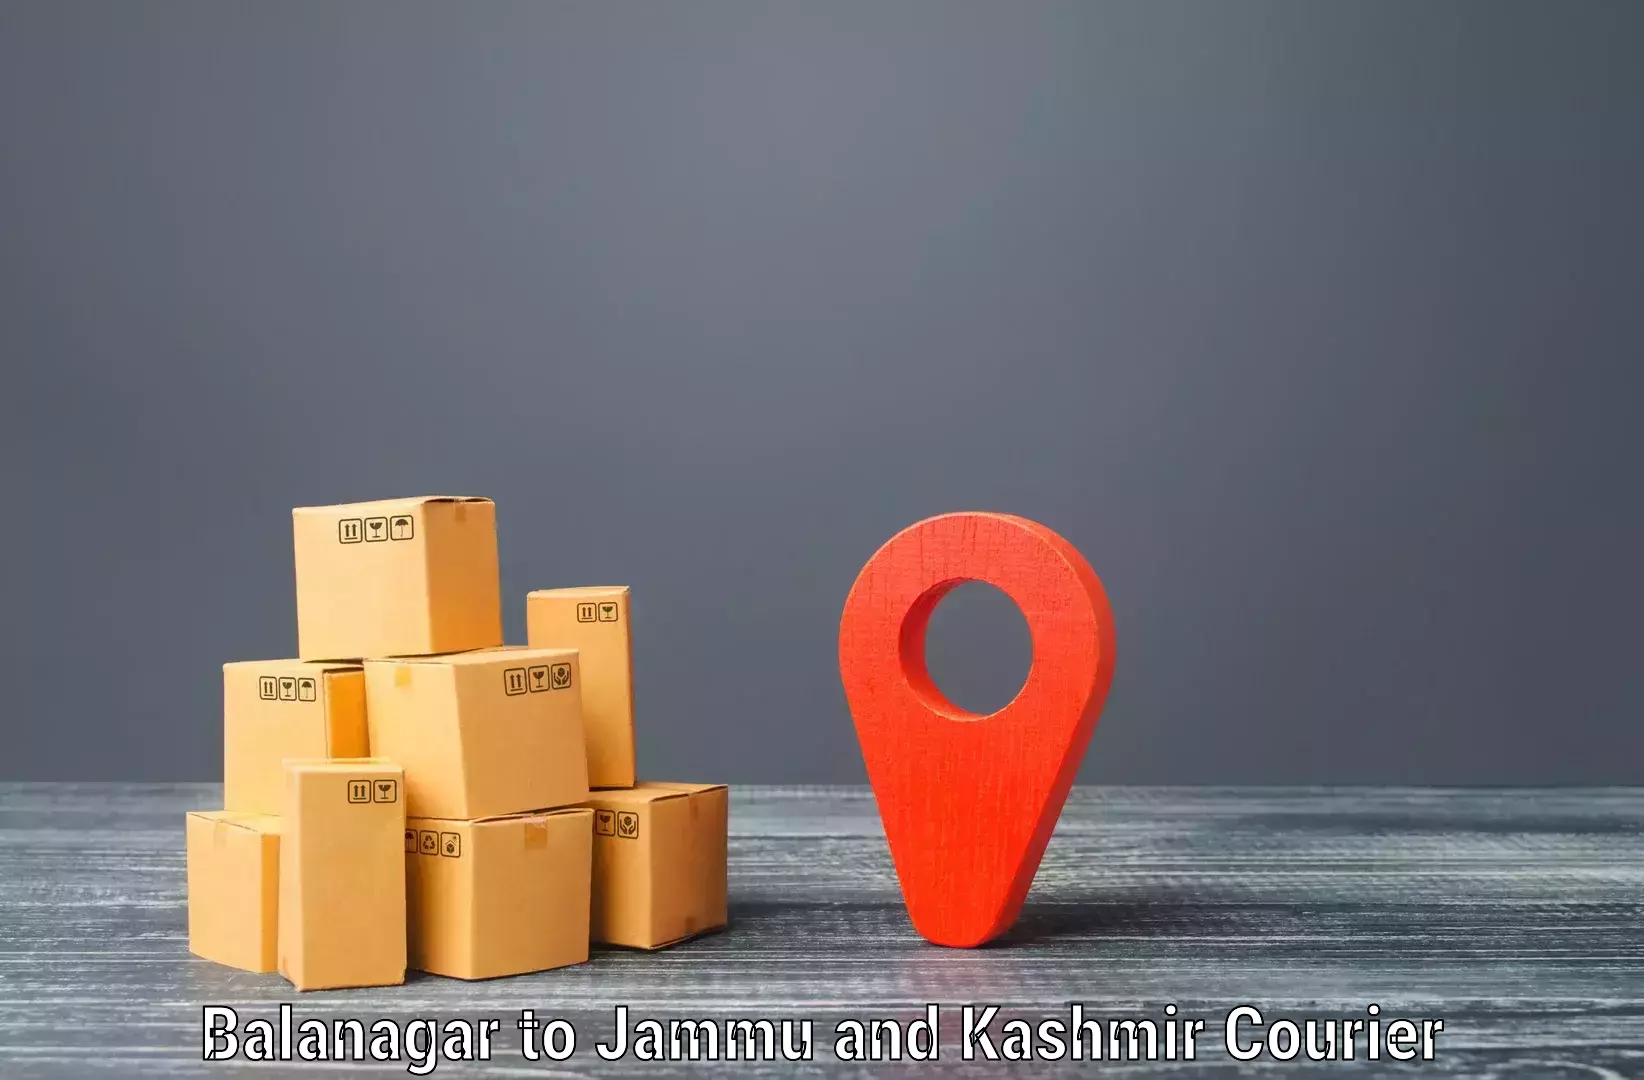 Efficient parcel transport in Balanagar to Kulgam